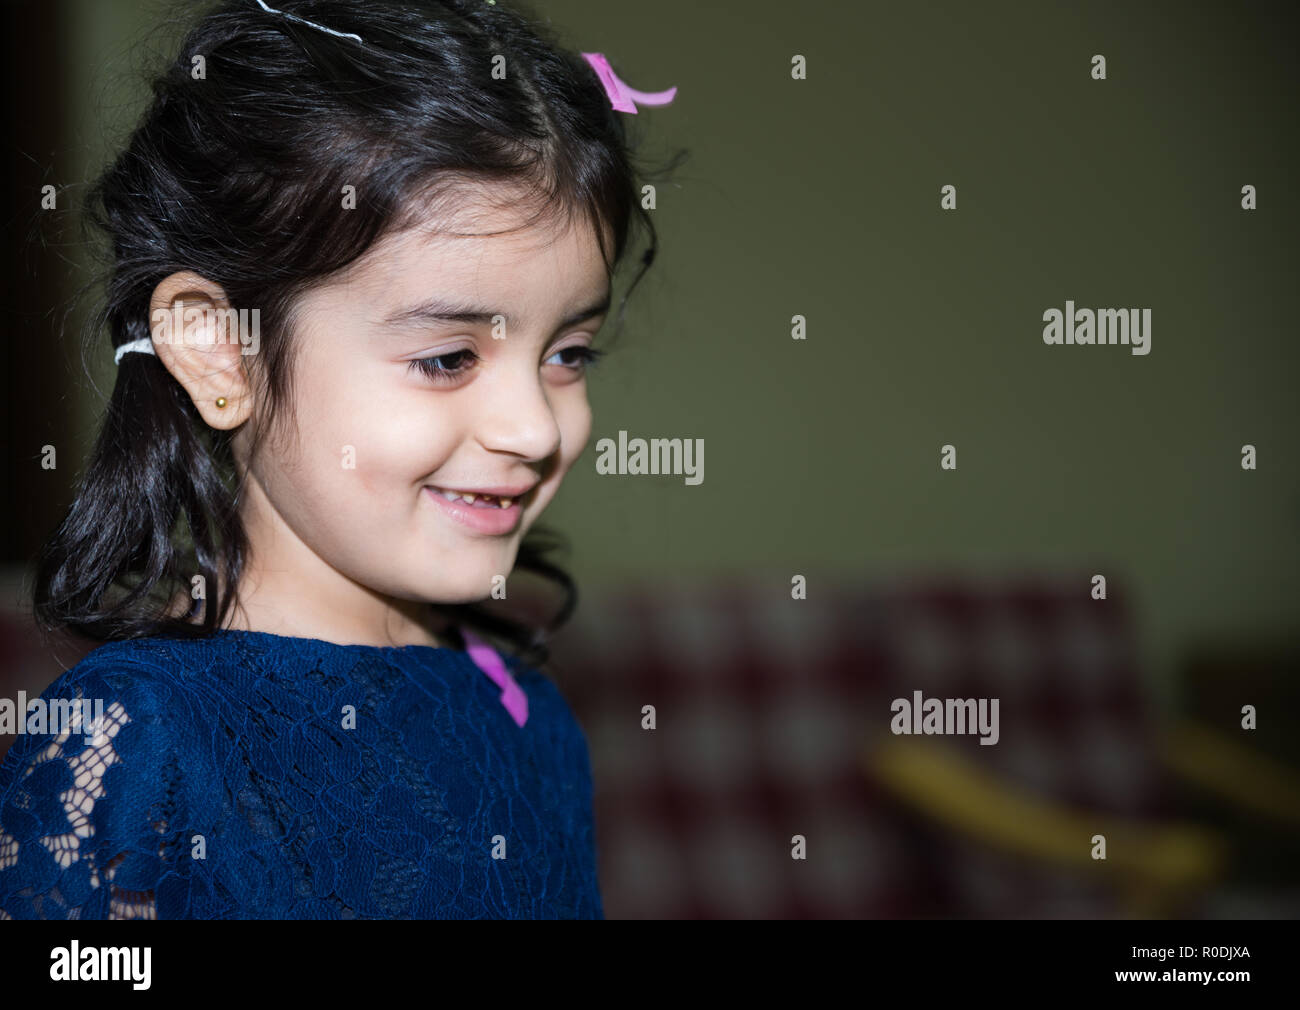 Une petite fille aux dent cassée smiling for camera sur anniversaire celeberation Banque D'Images